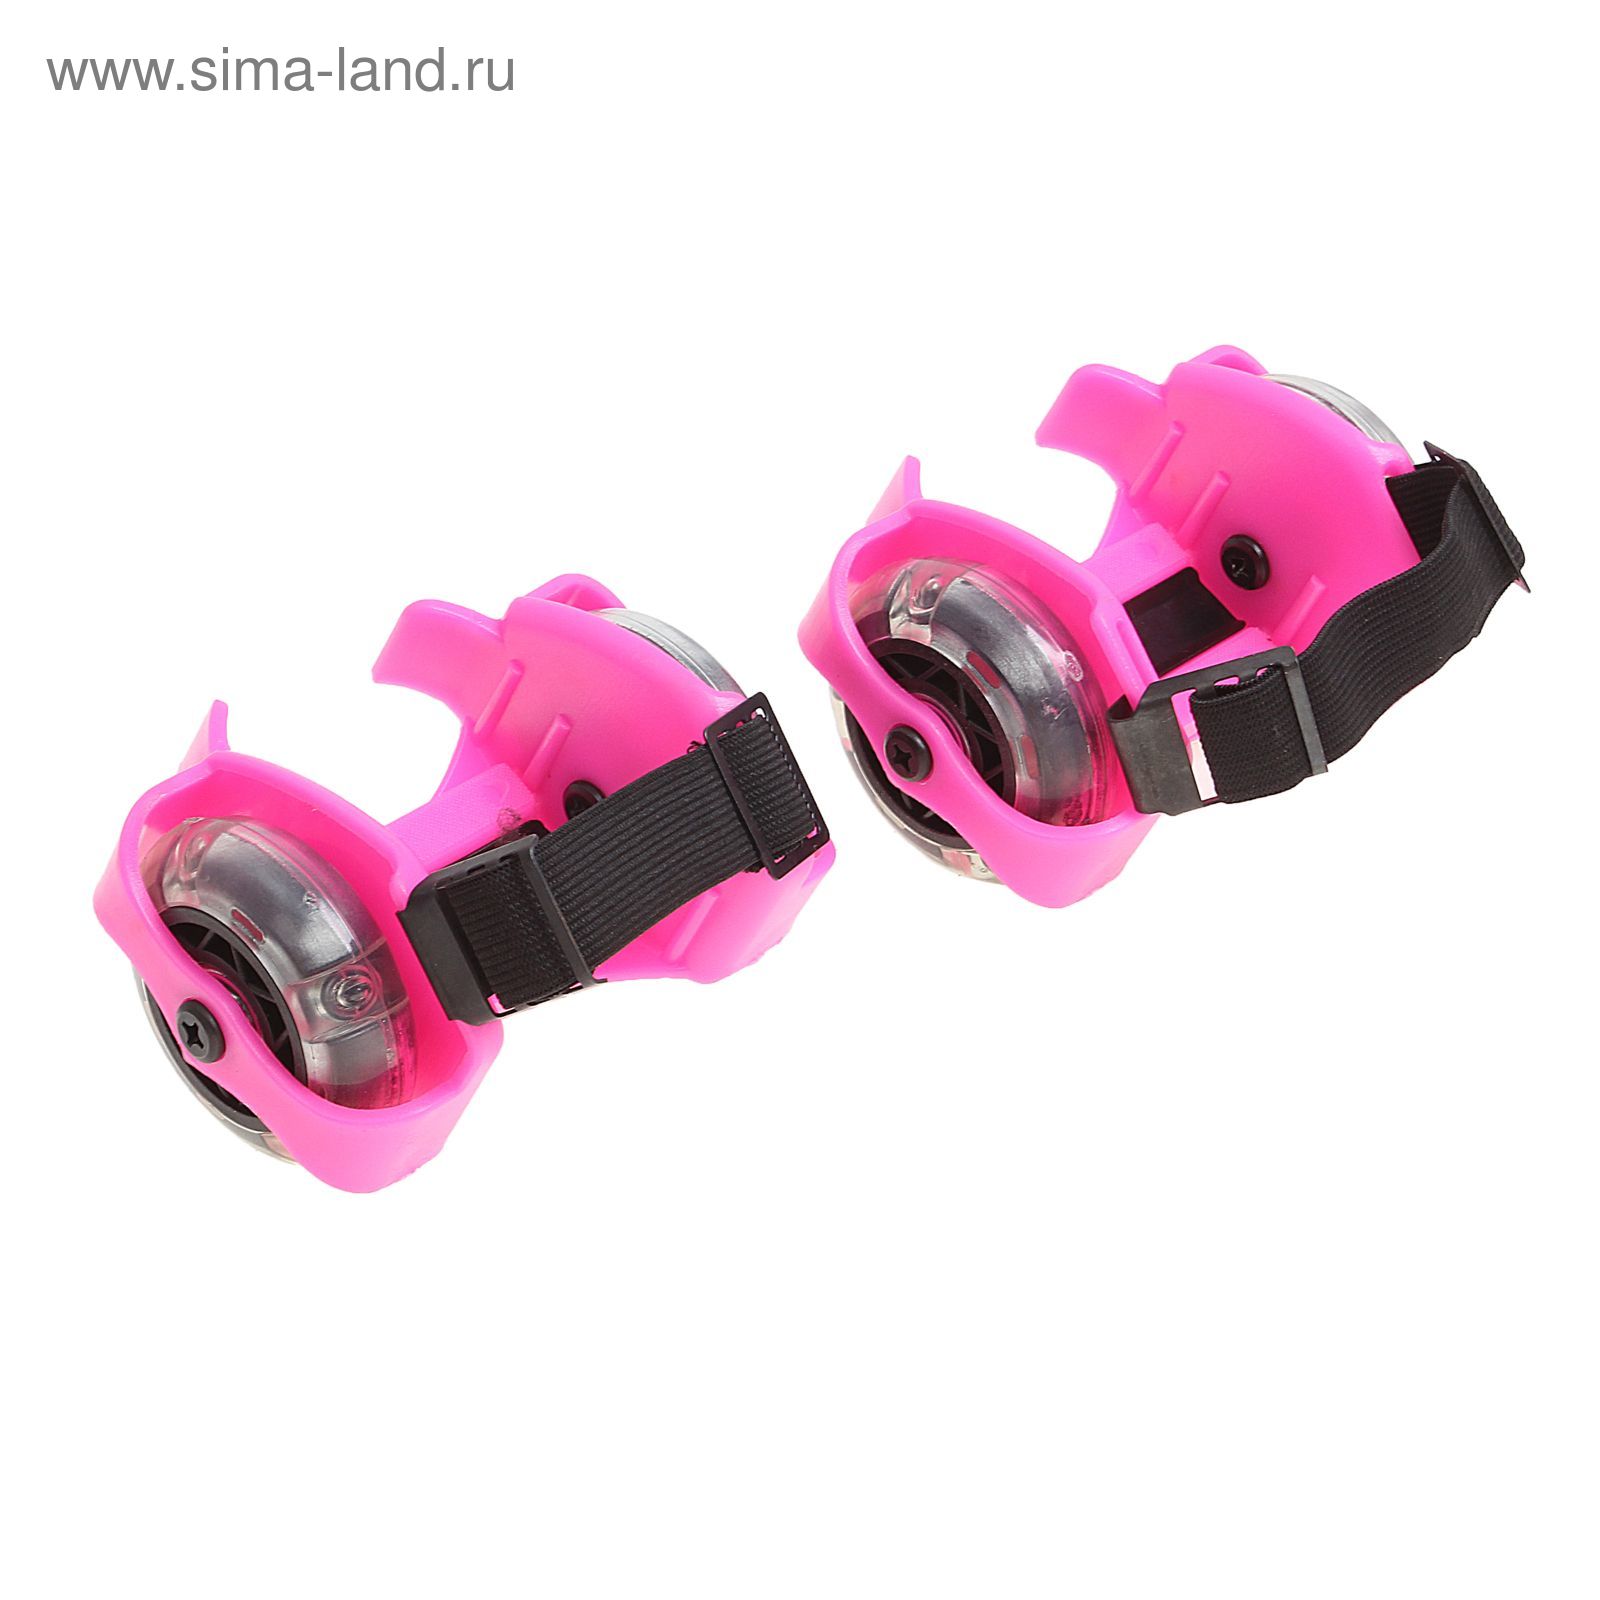 Ролики для обуви раздвижные мини, колеса световые РVC d=70 мм, ширина 6-10 см, до 70 кг, цвет розовый